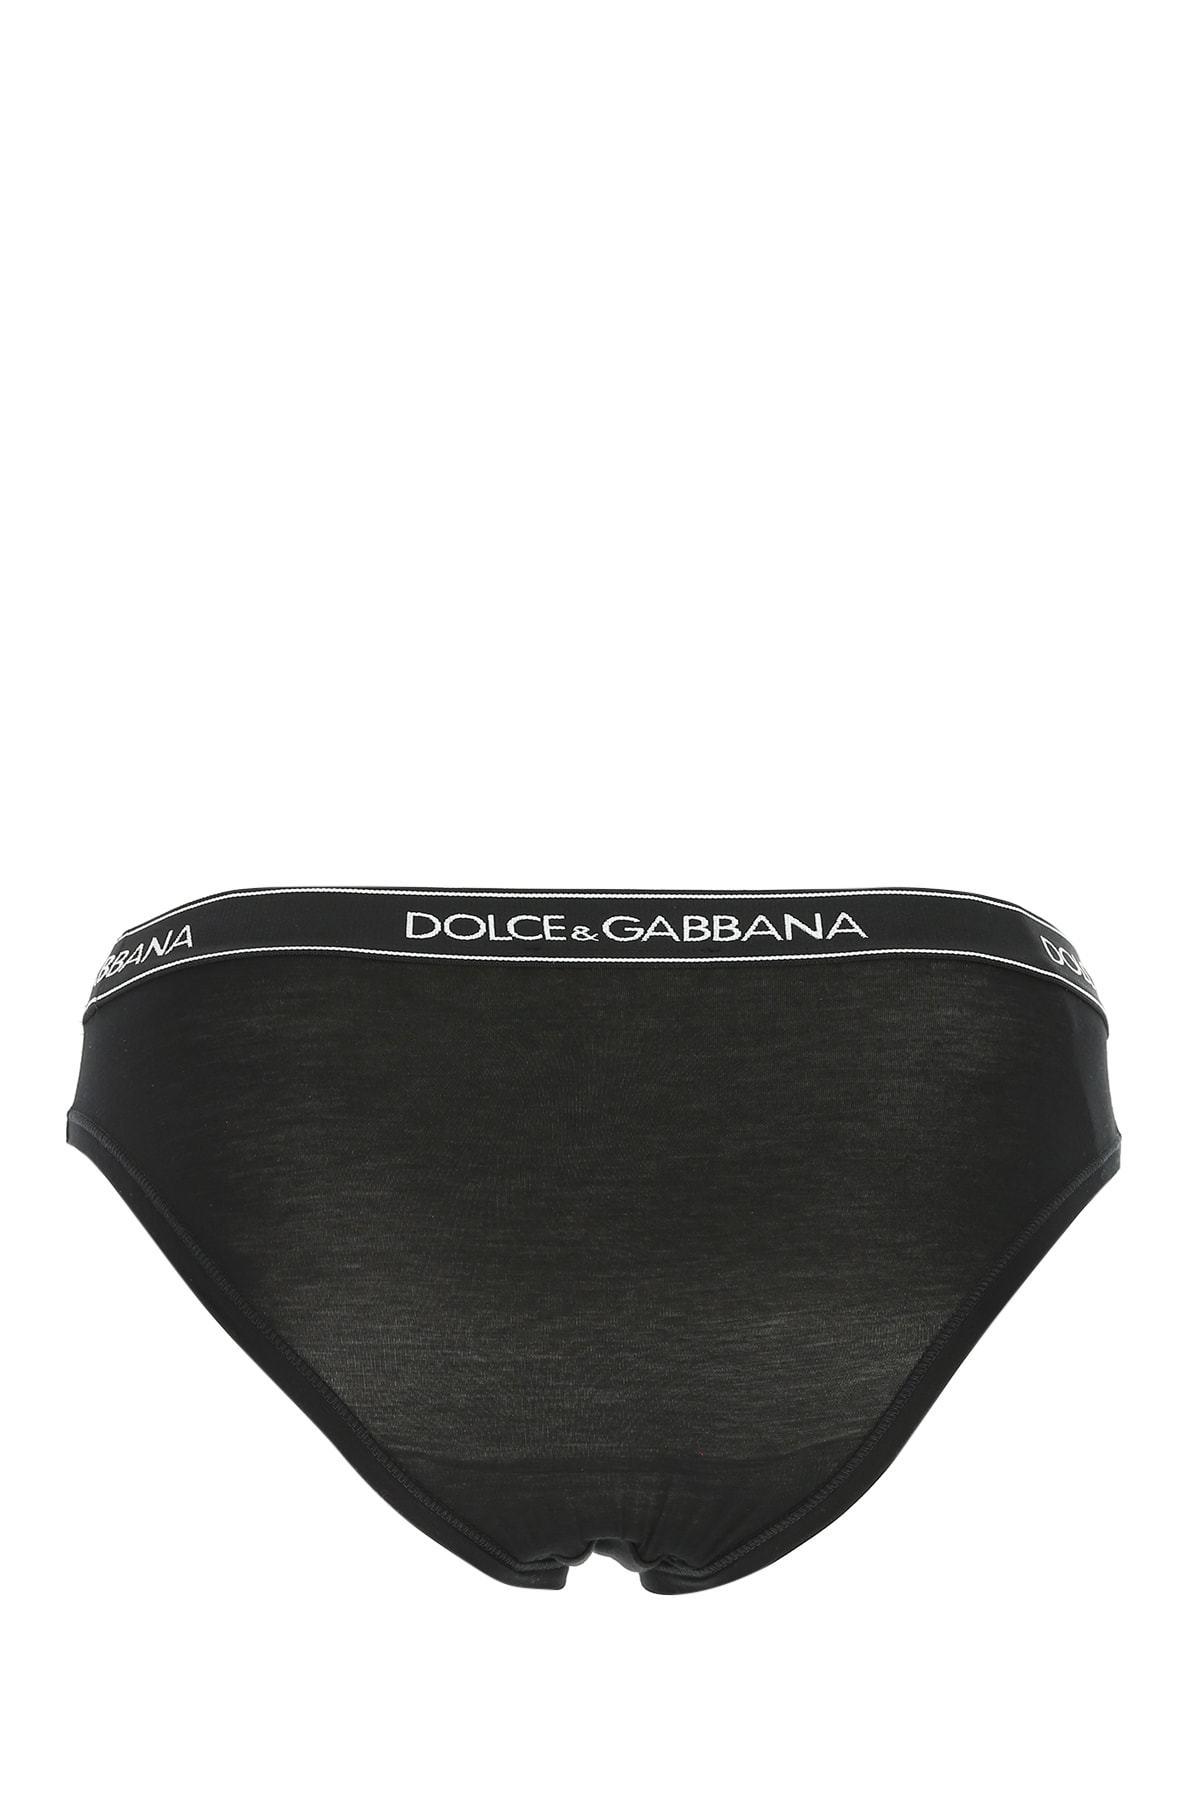 Dolce & Gabbana Cotton Logo Band Briefs in Black - Lyst